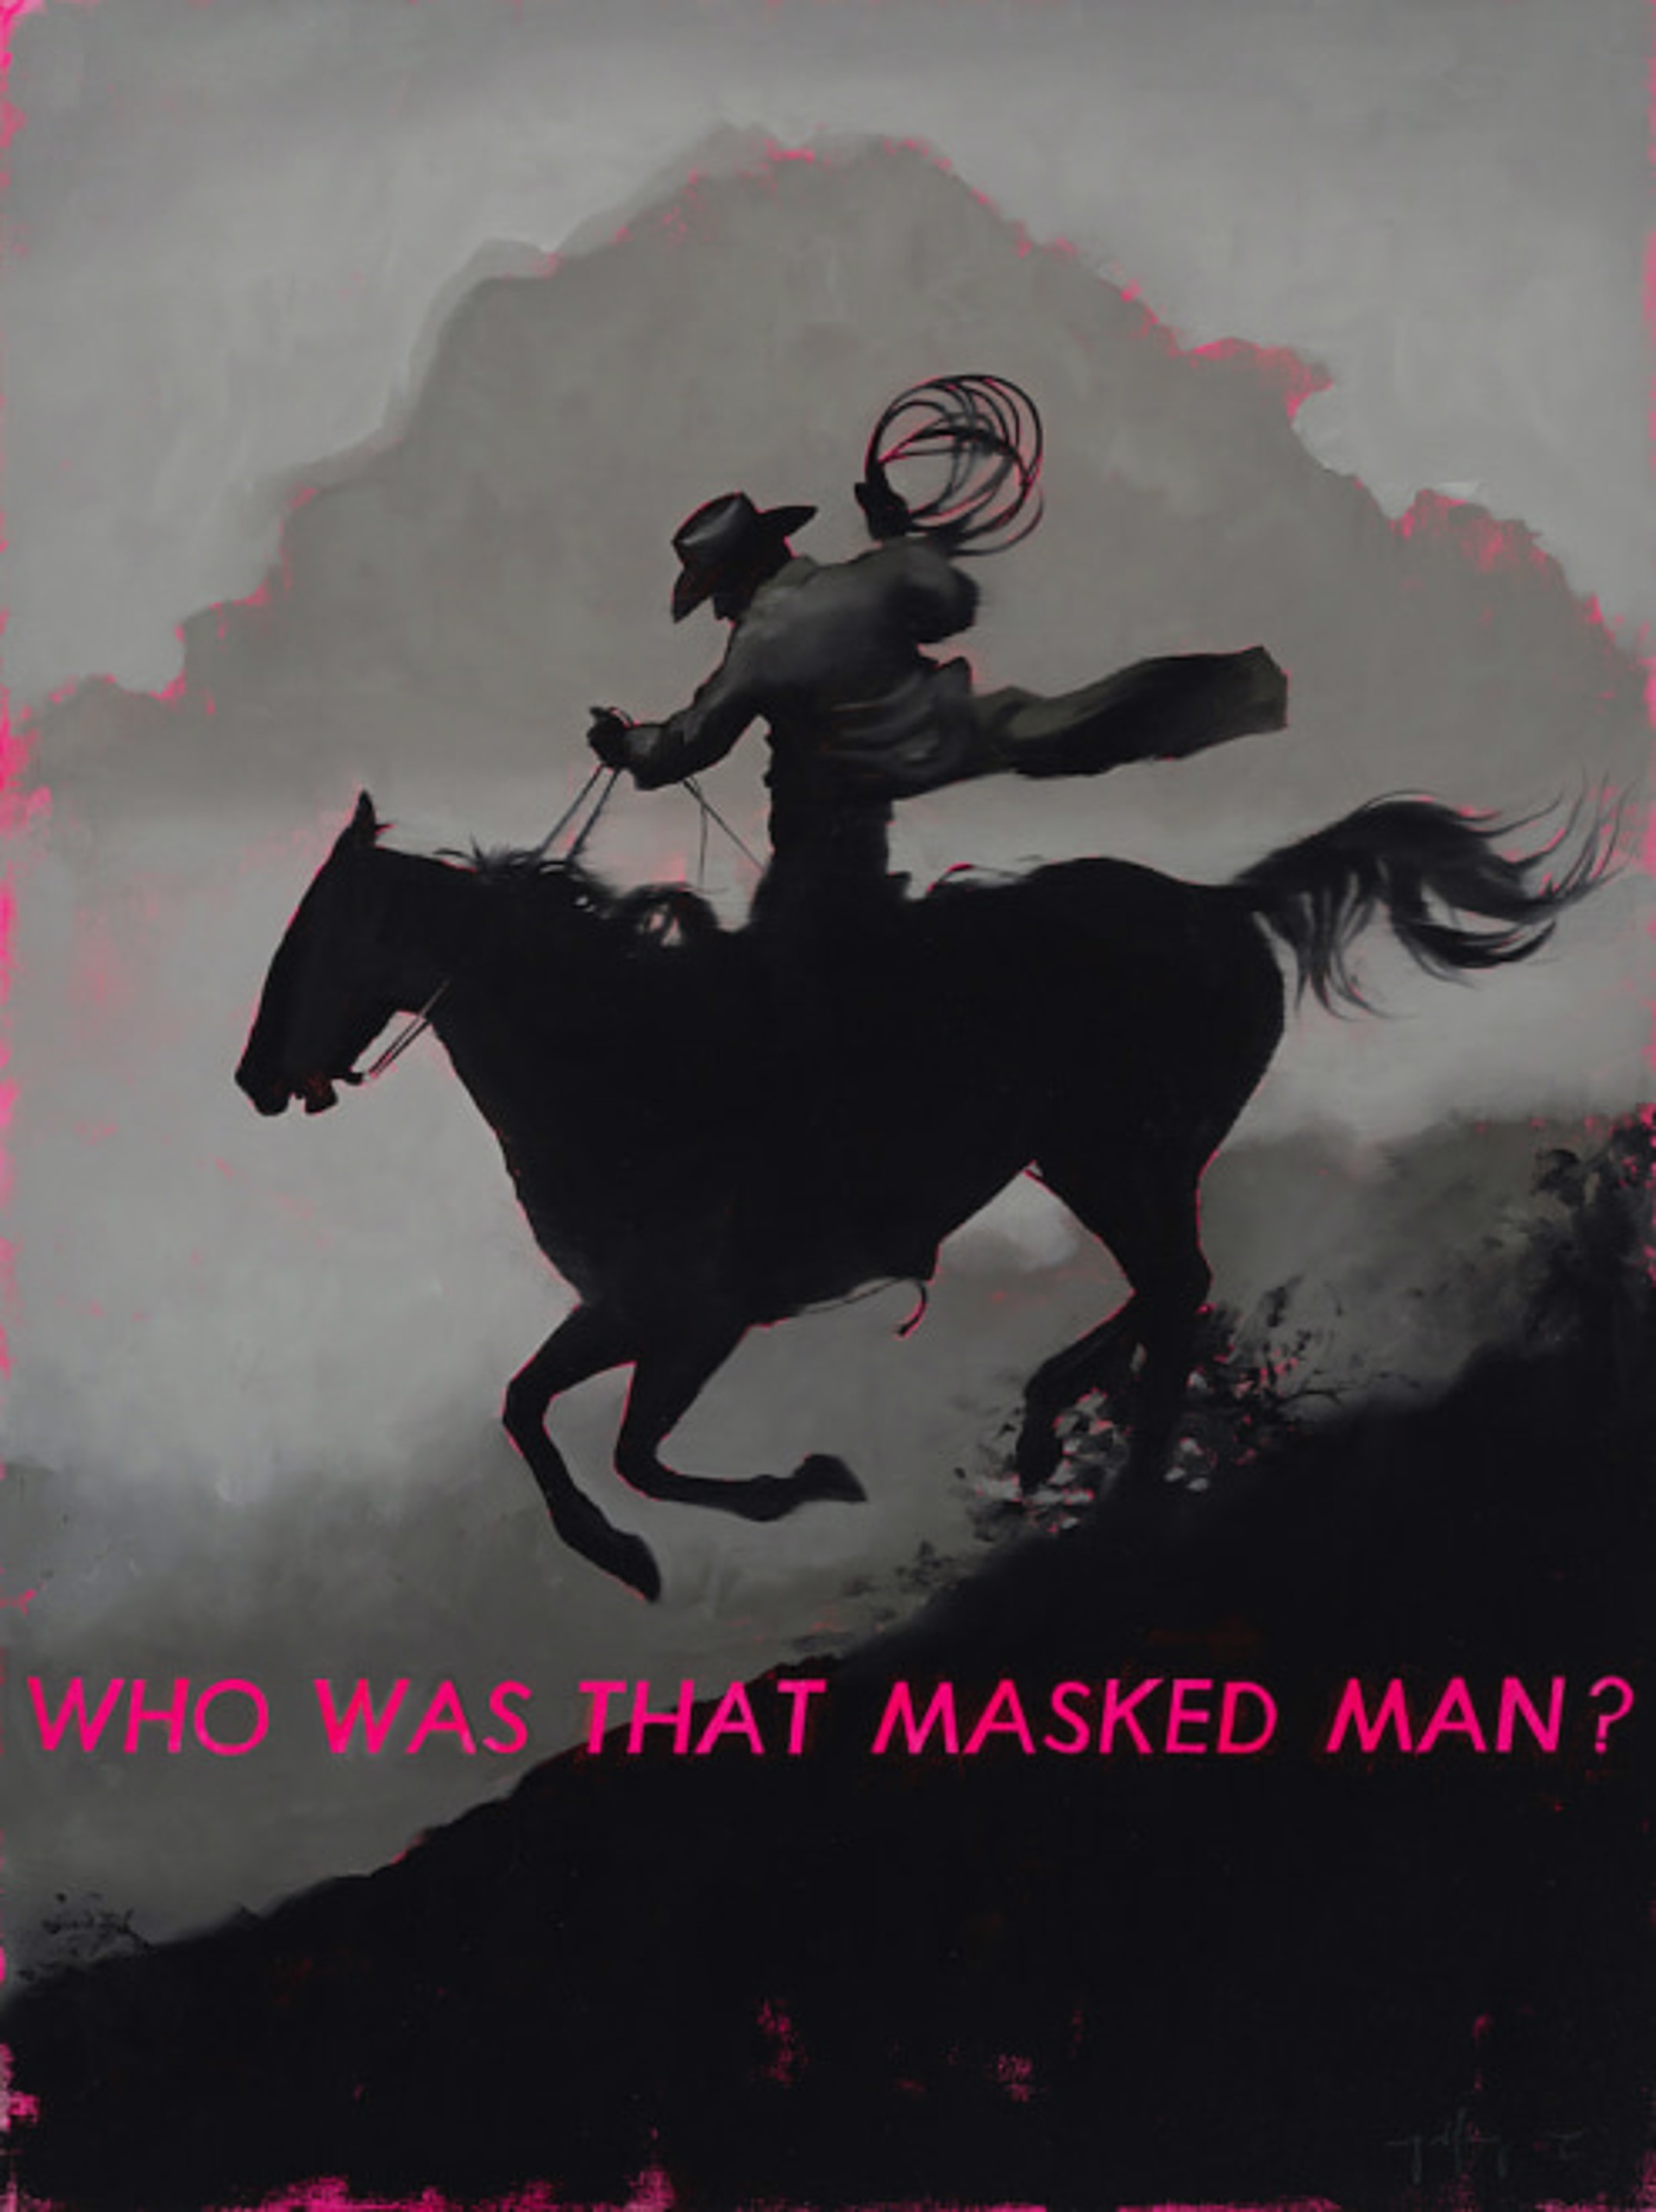 Folklore - Masked Man by Geoffrey Gersten